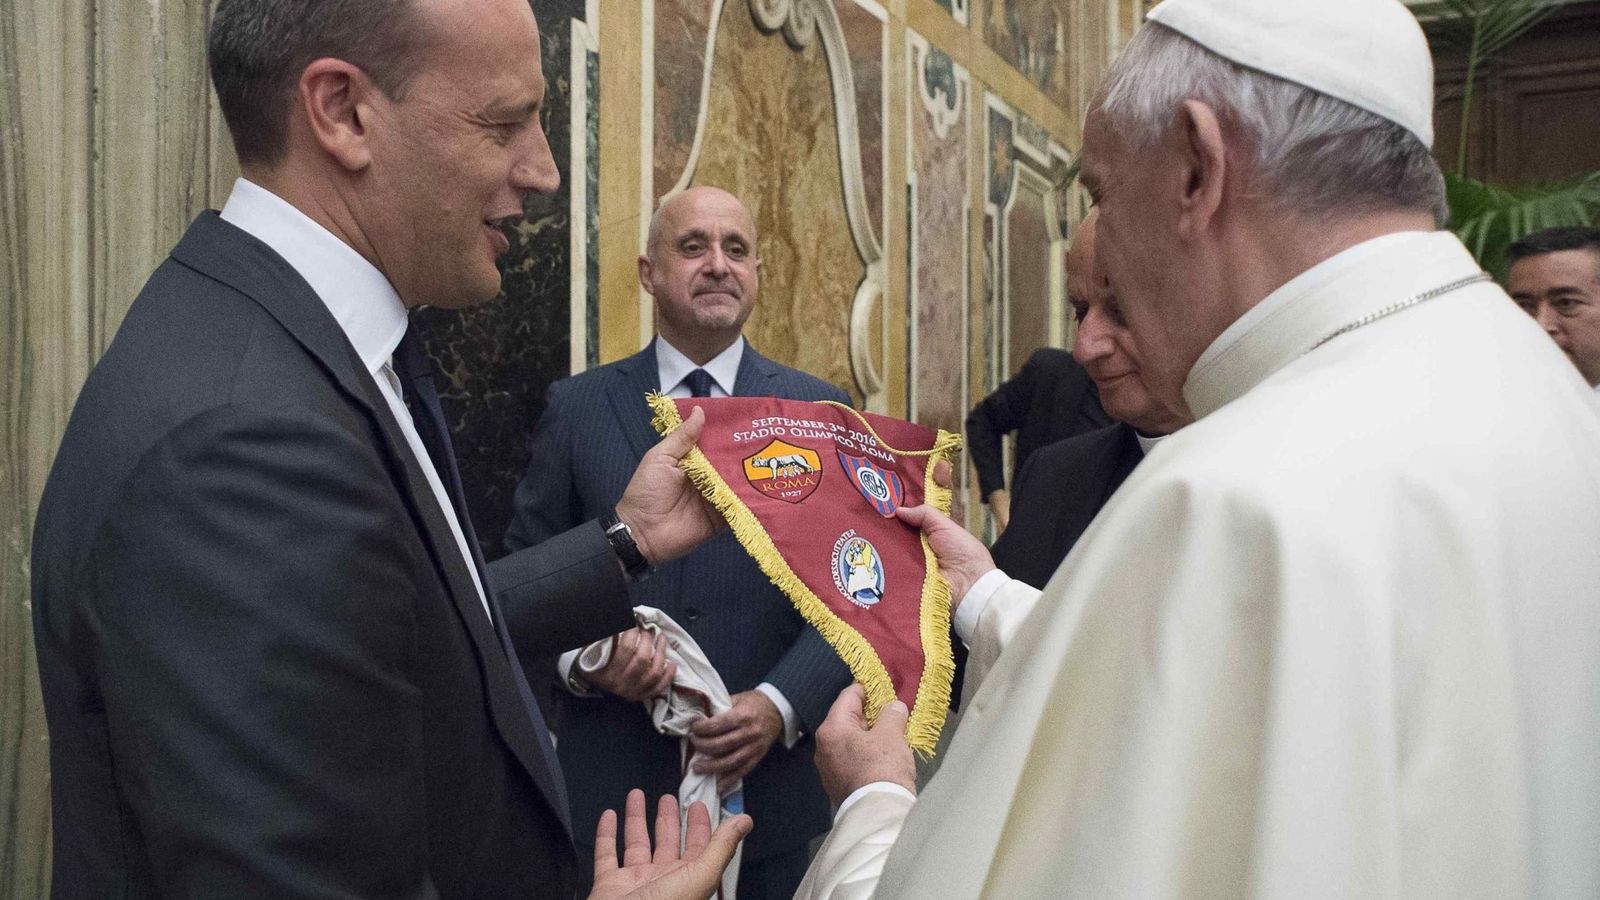 Foto: El Papa recibe un obsequio del partido (EFE)